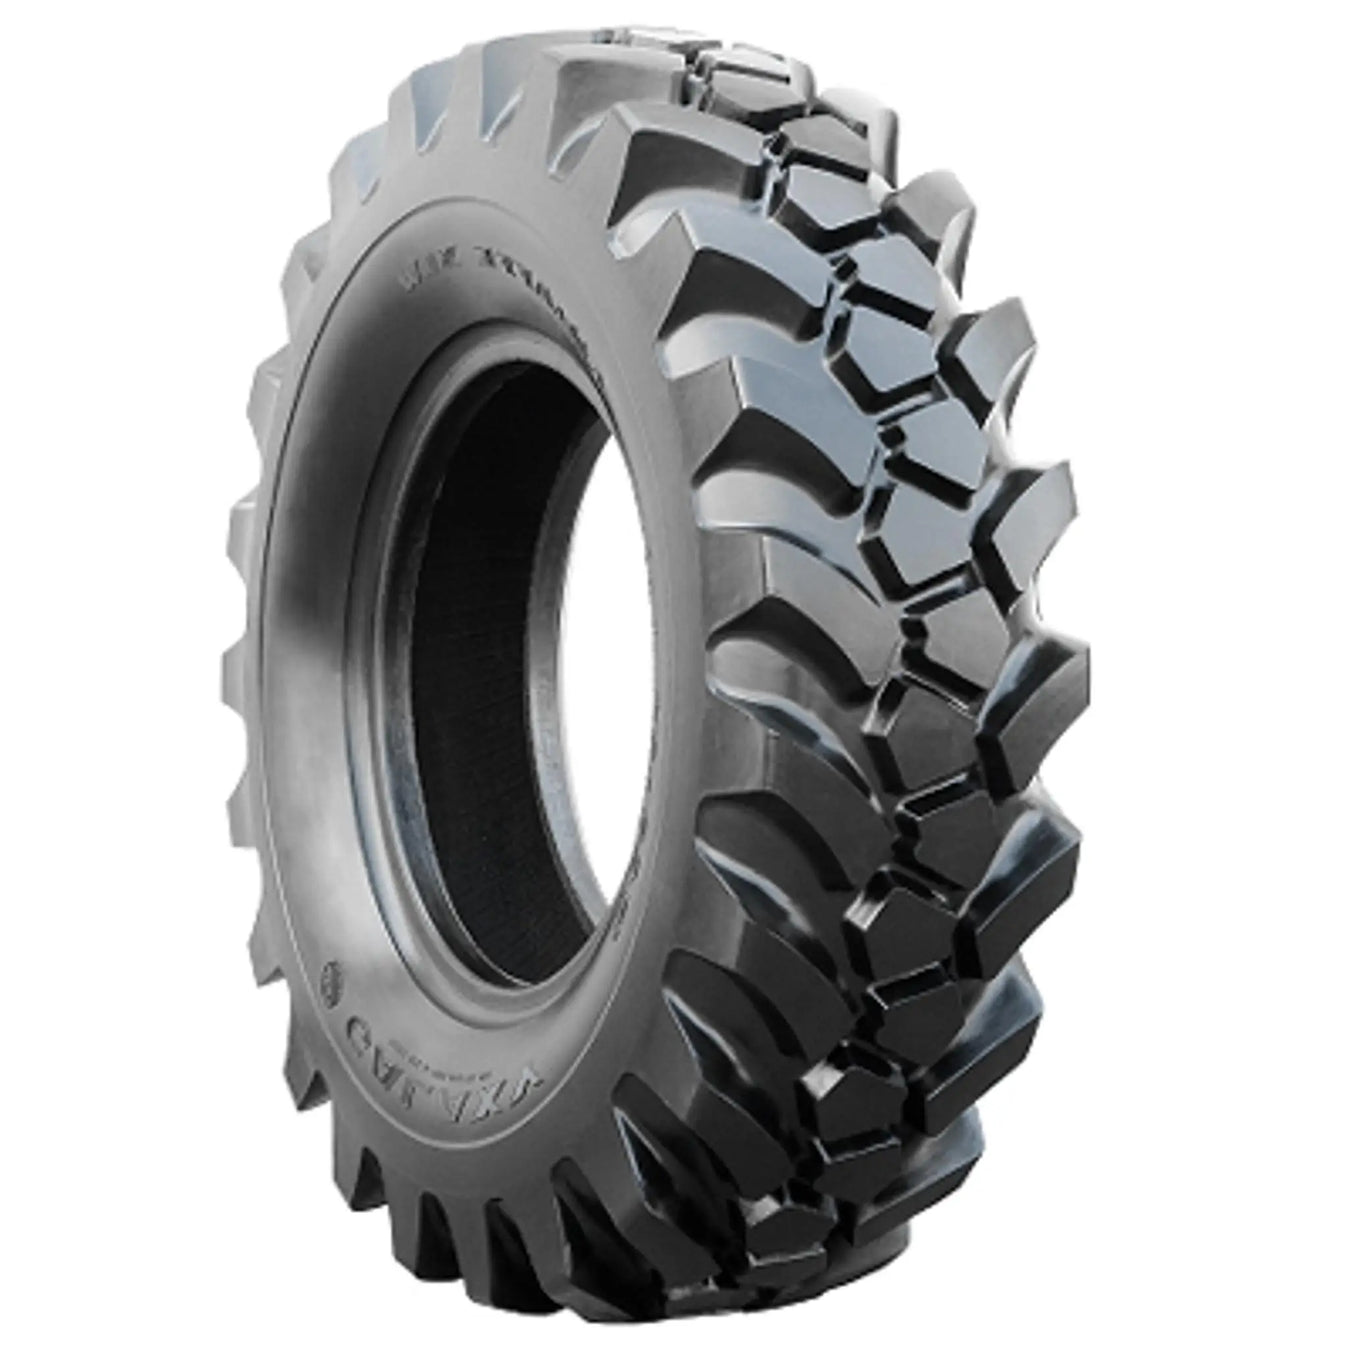 Telehandler Tires - Pneumatic Tire Size - 15.5-25